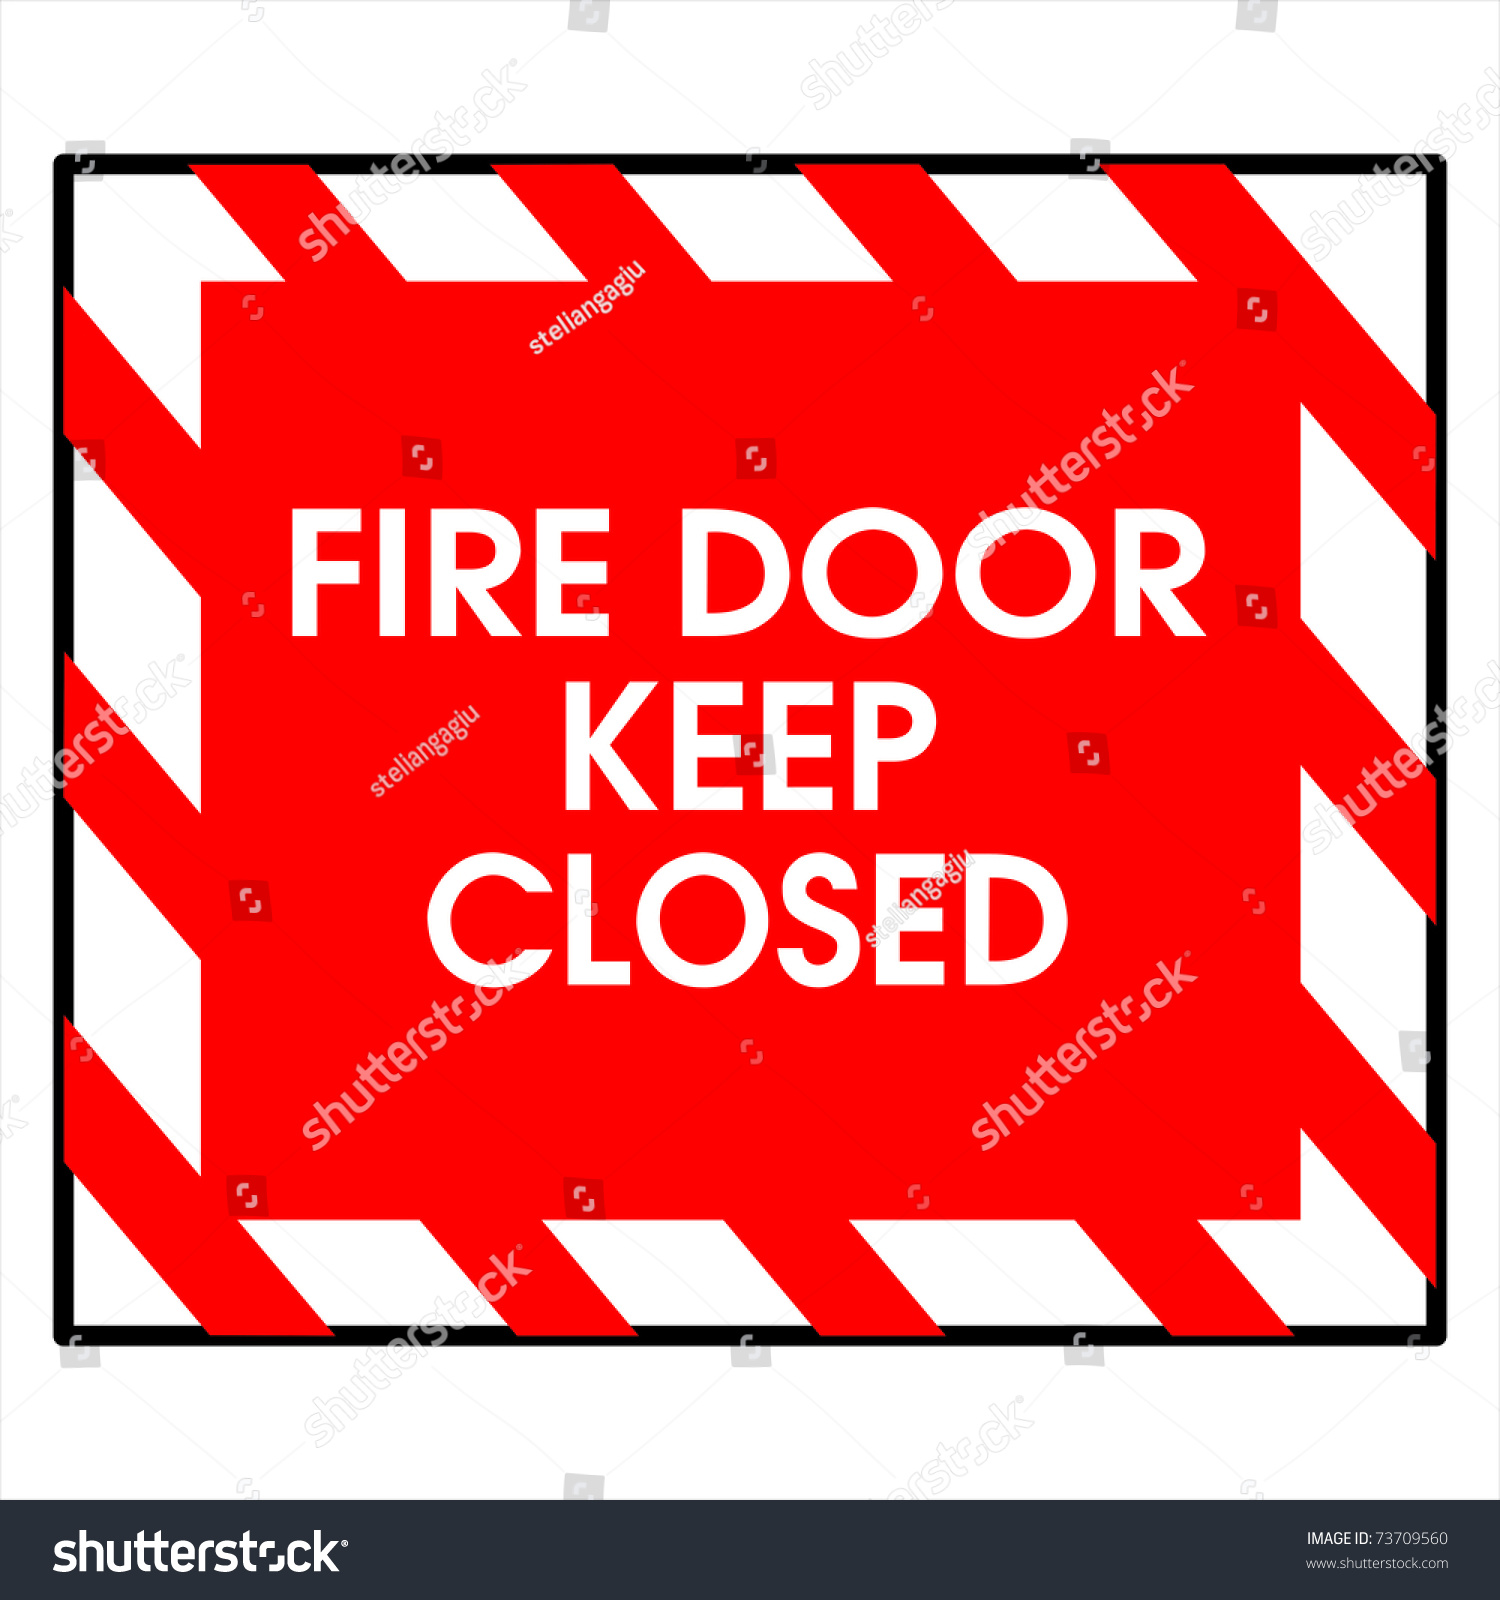 fire-door-keep-closed-stock-photo-73709560-shutterstock